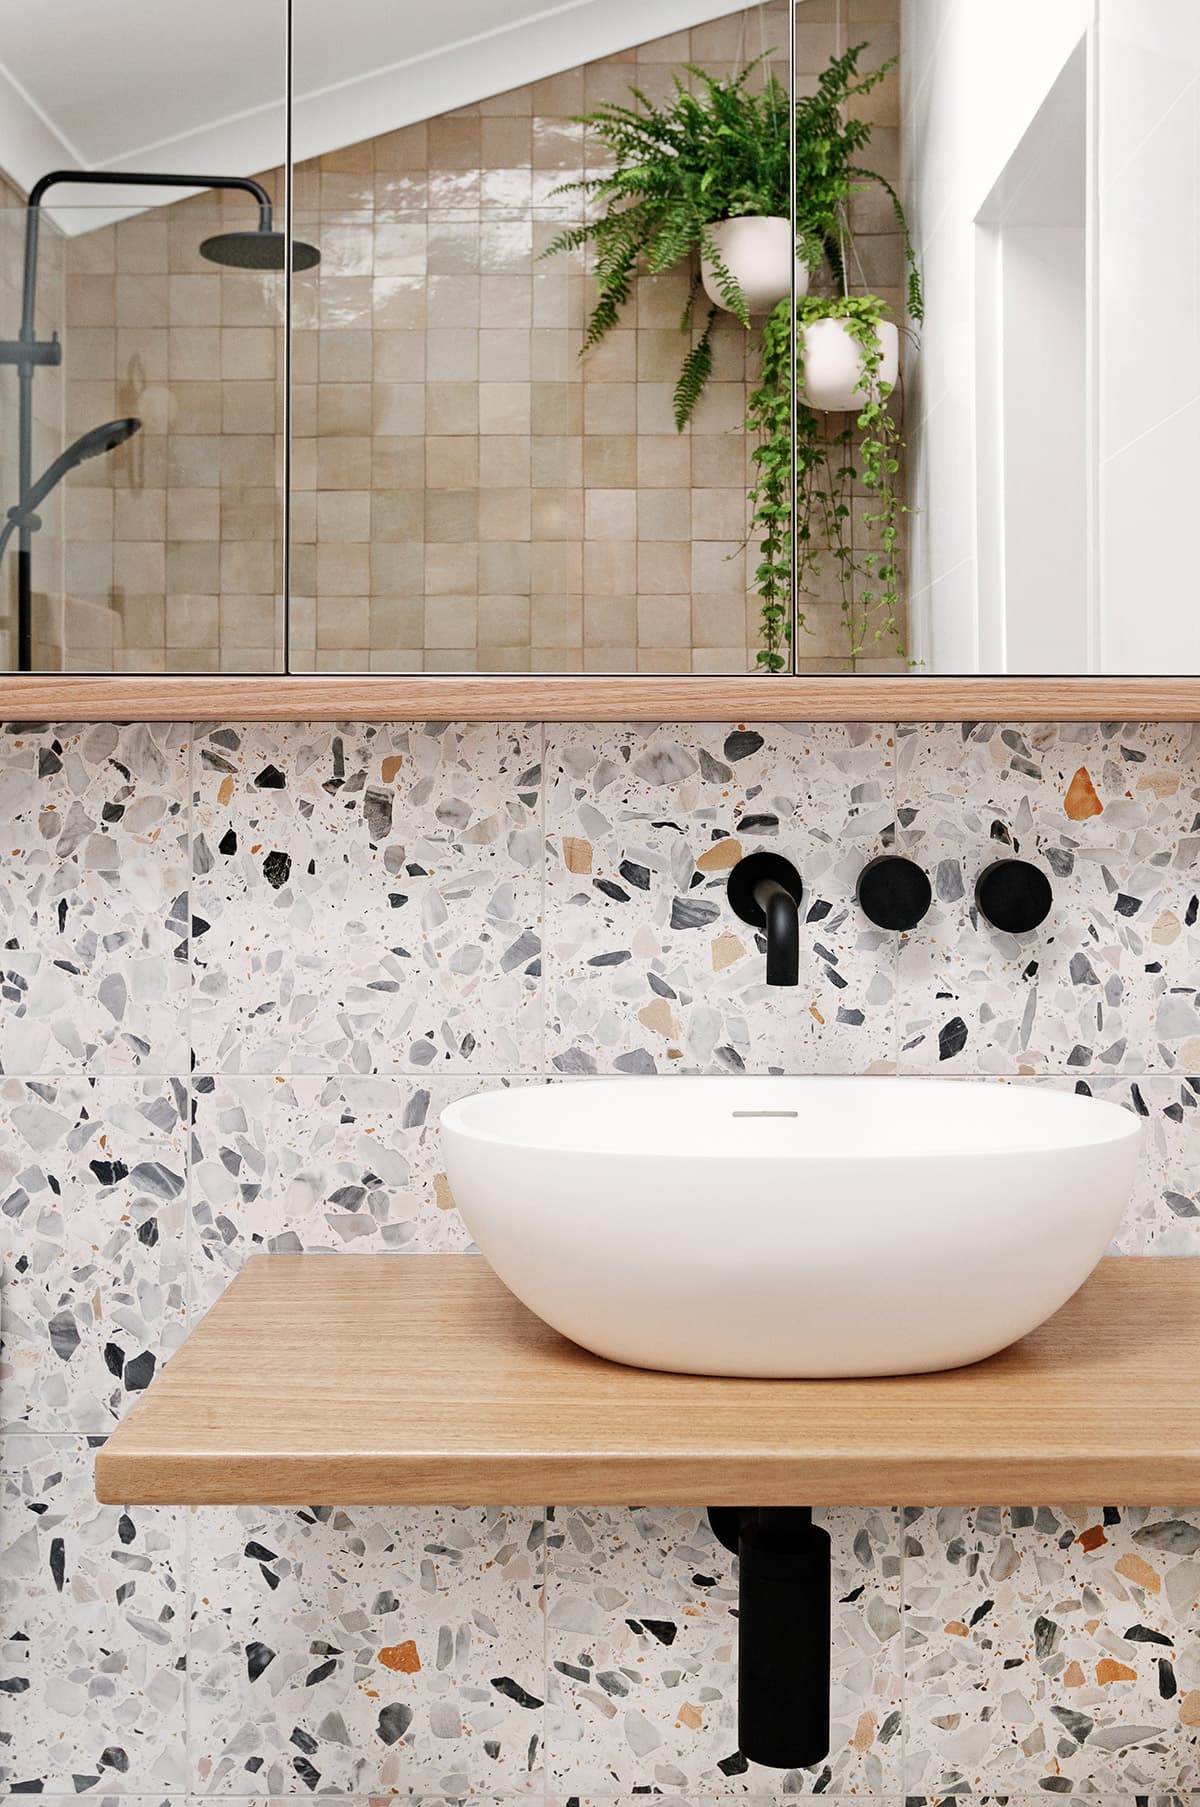 bu biz izci tarafından mozaik fayanslarla kaplı bir banyo